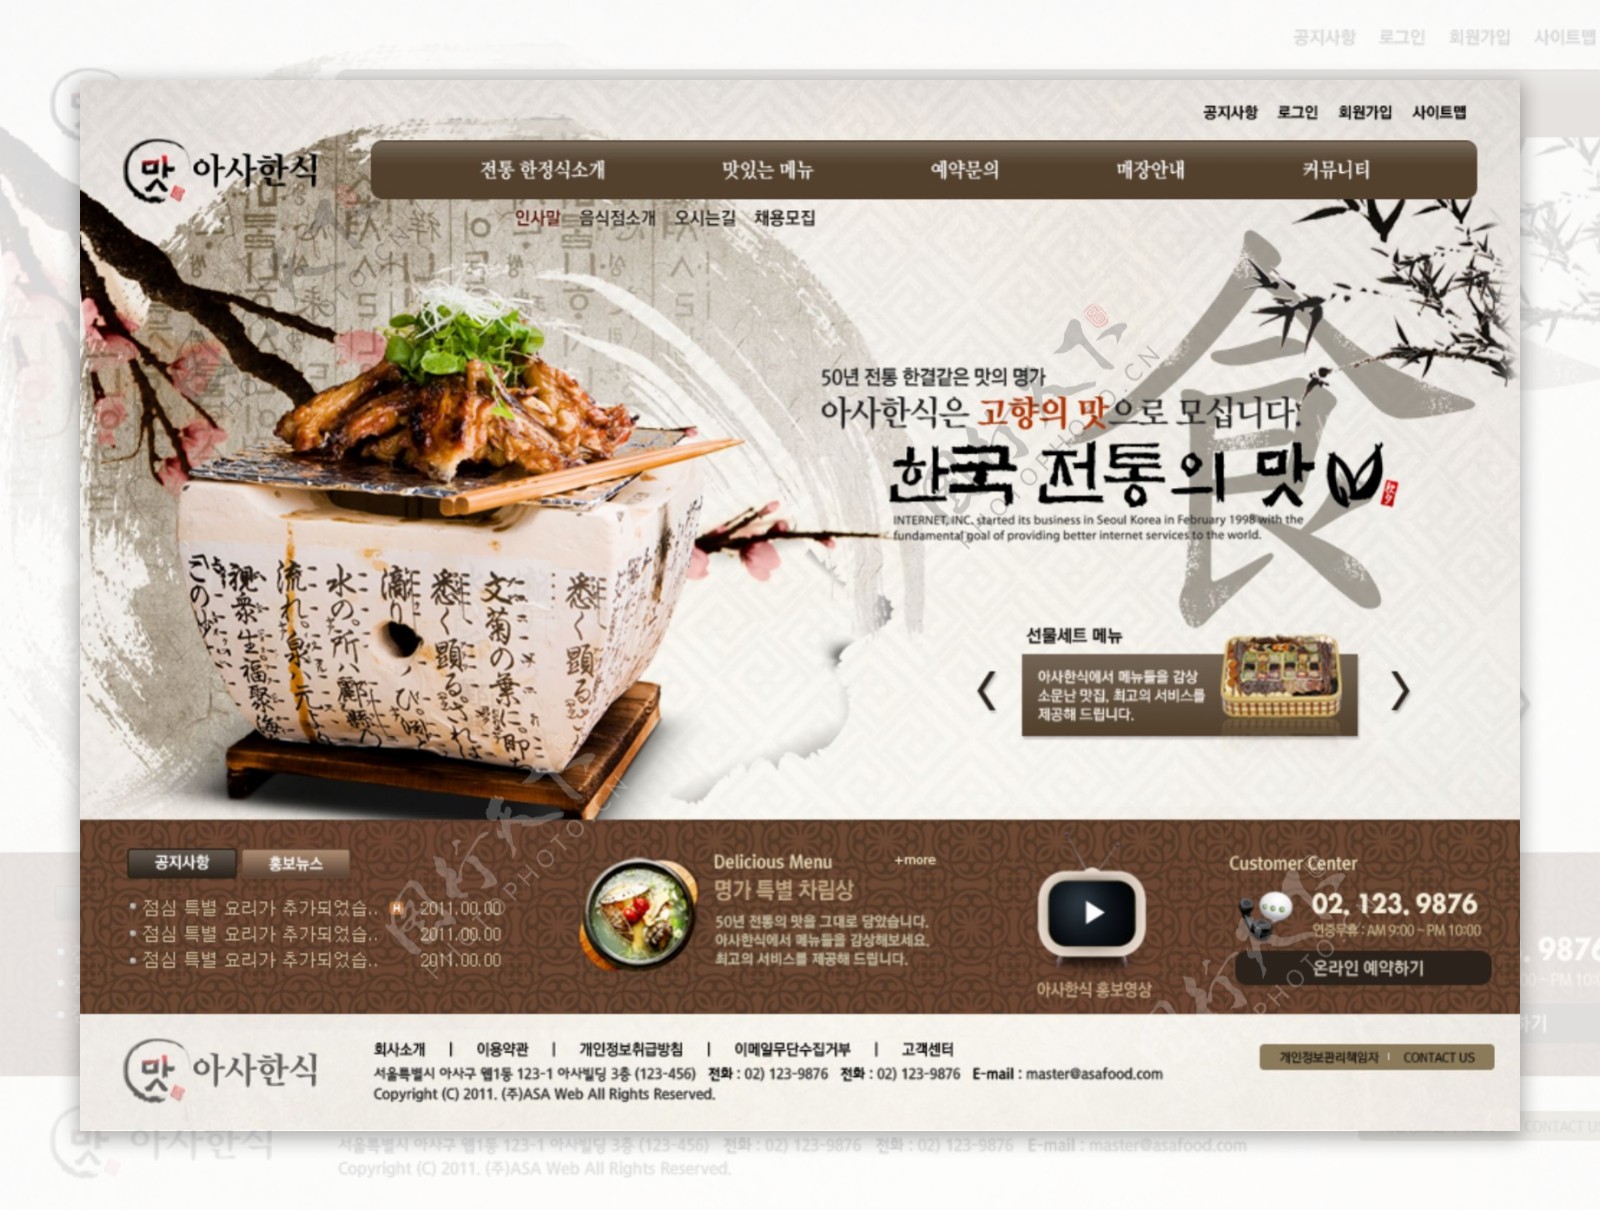 韩国饮食网页传统水墨风格PSD分层模板